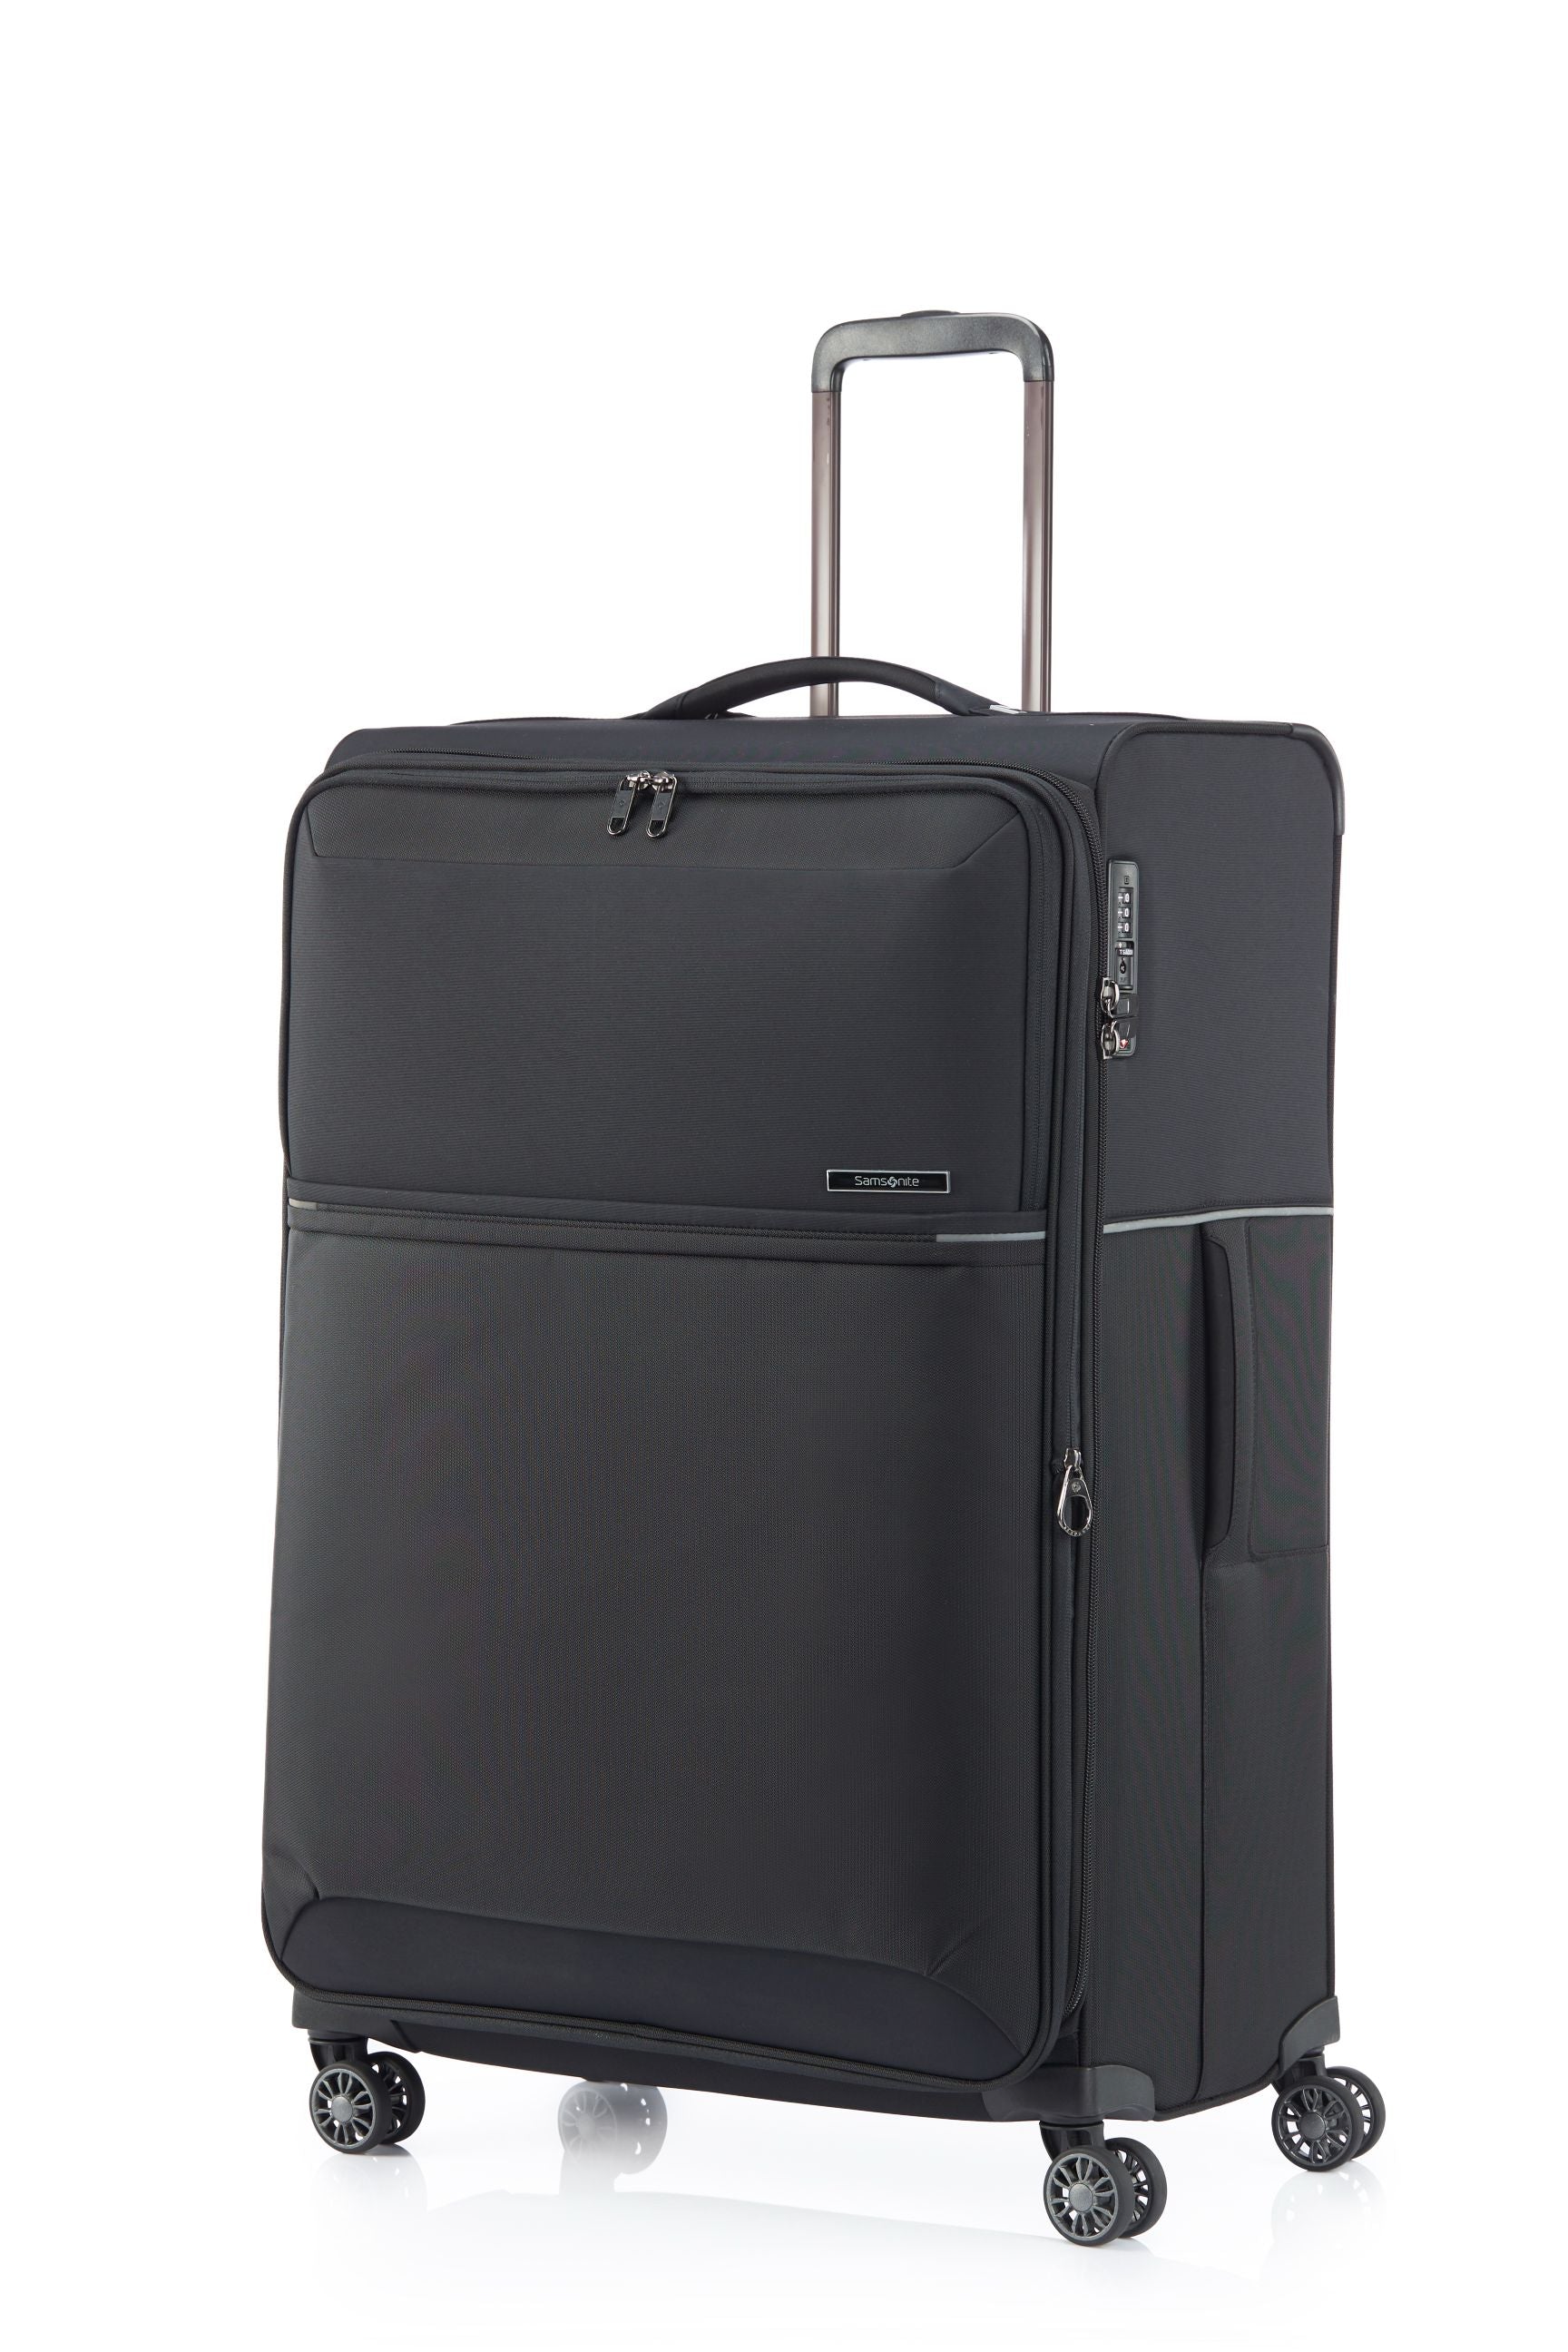 Samsonite - 73HR 78cm Large Suitcase - Black-3